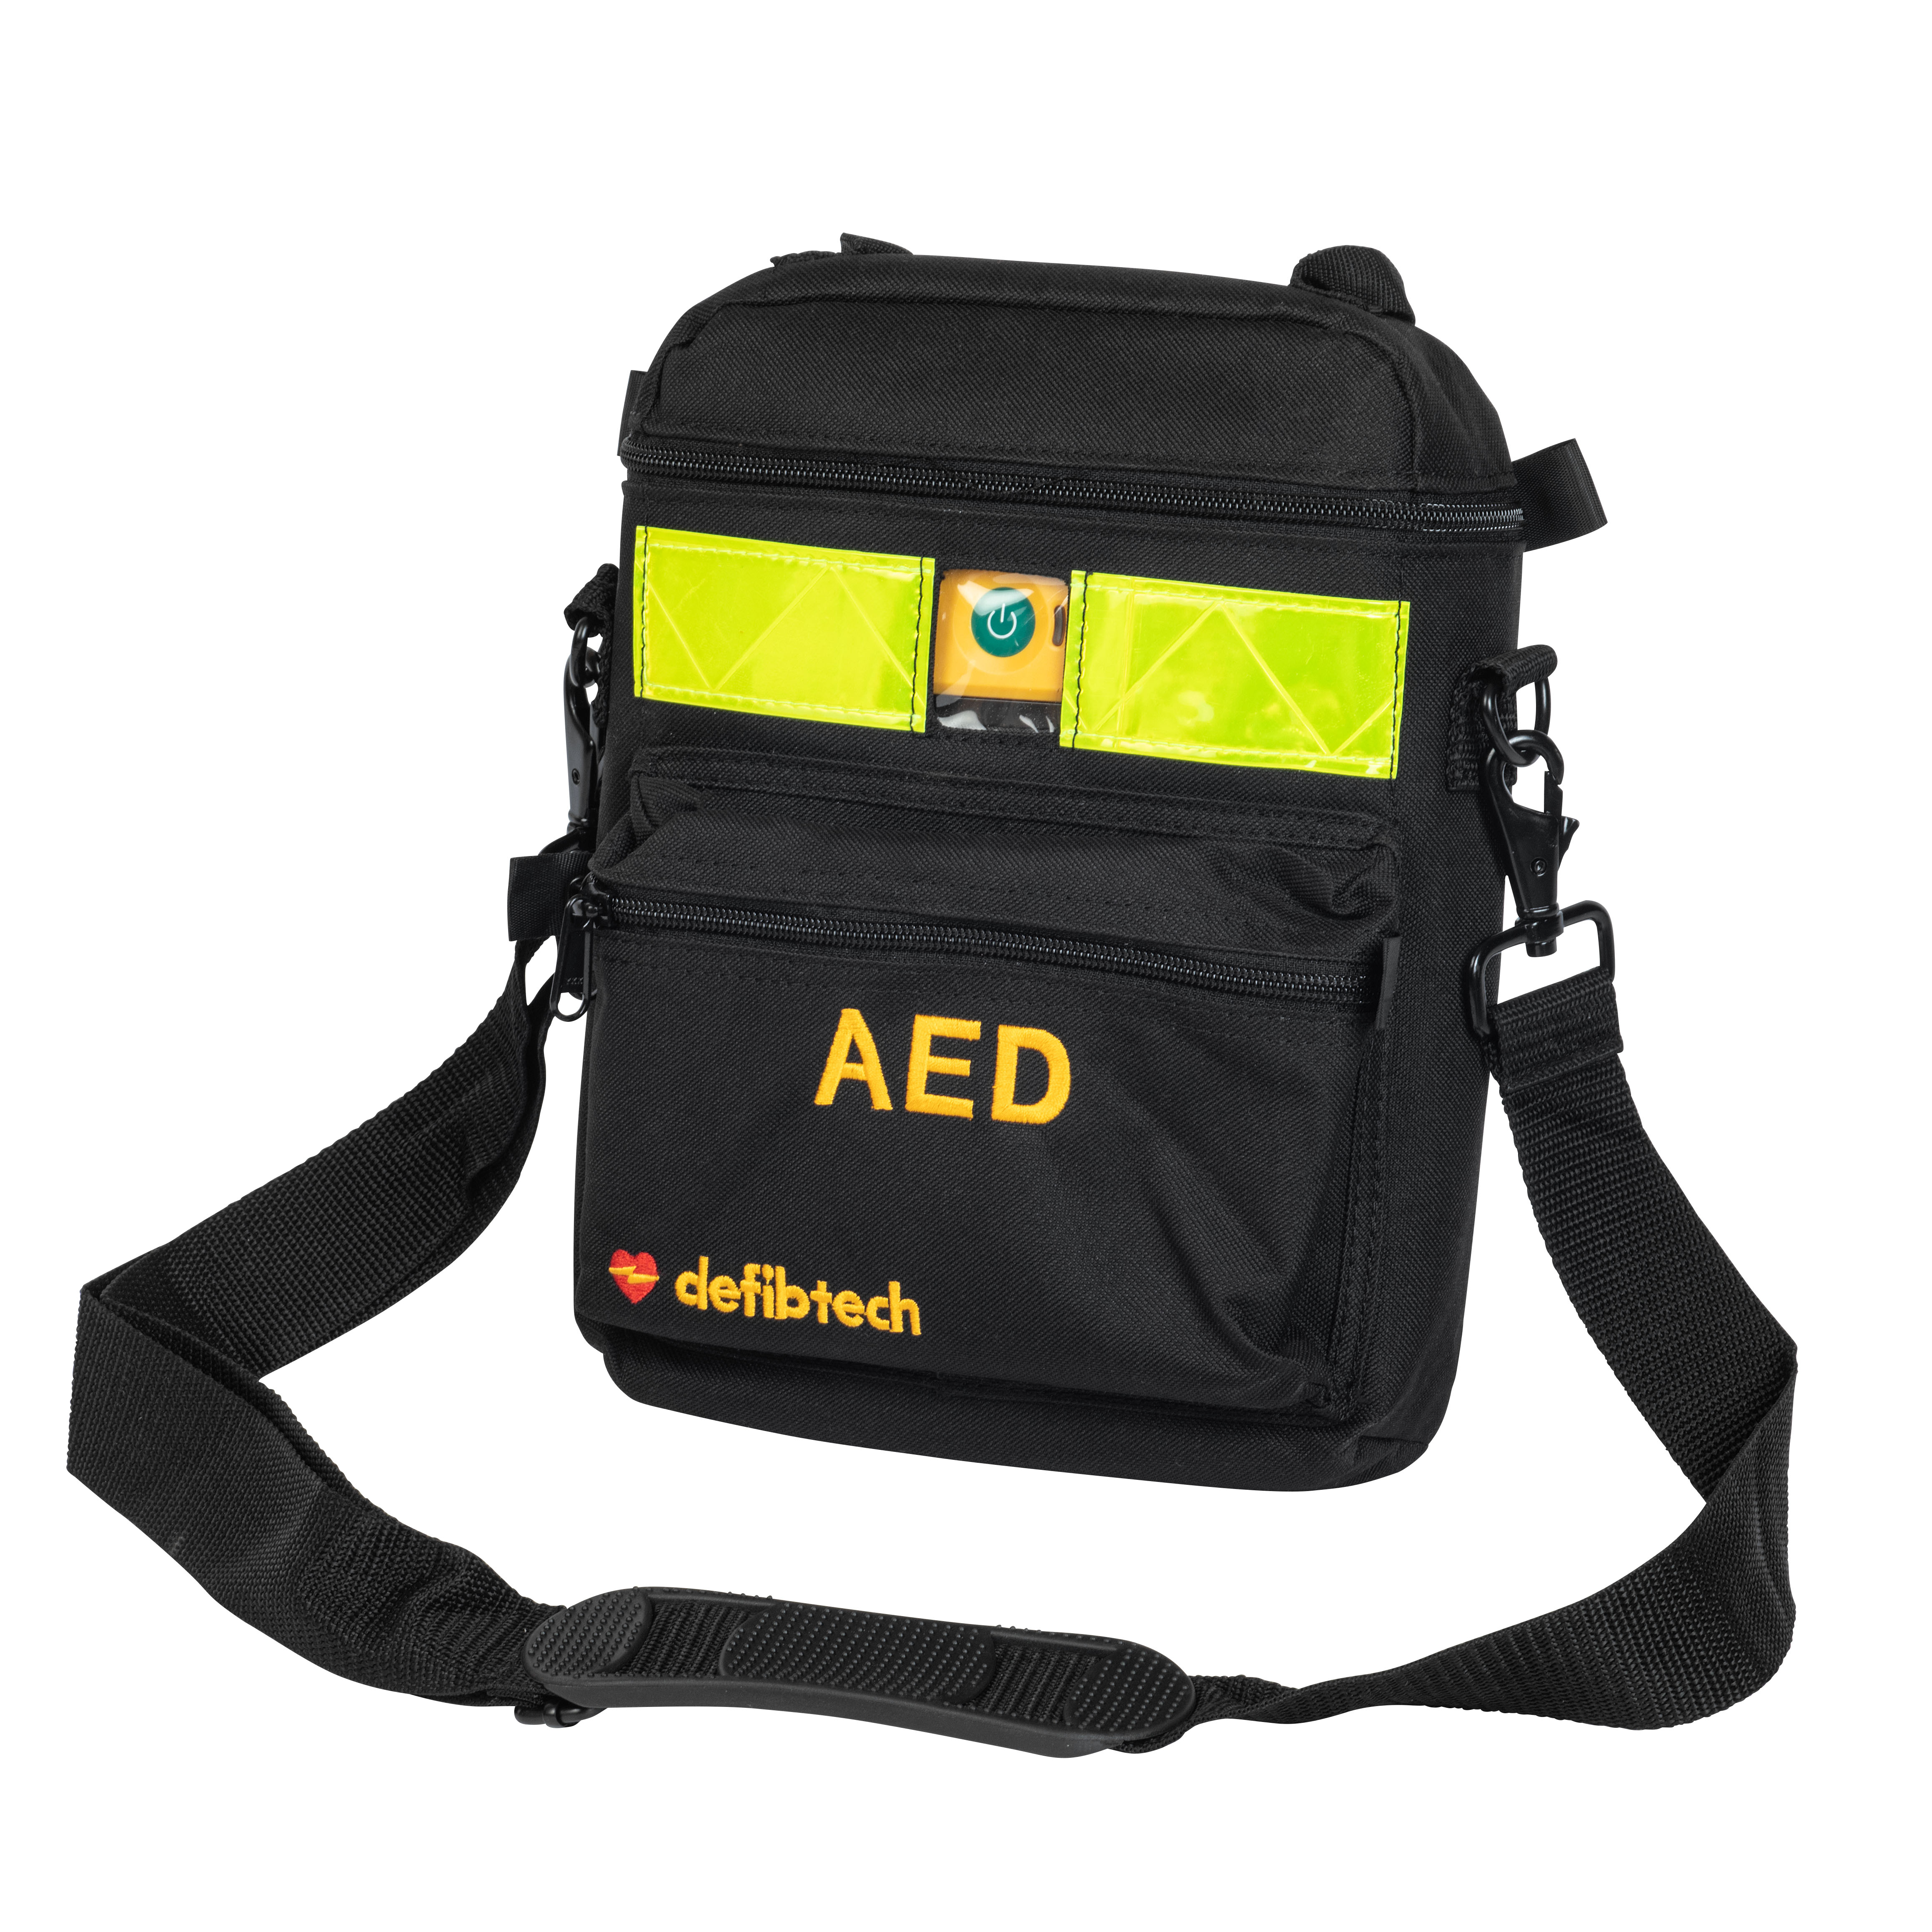 Defibtech AED Schutzschrank grün mit Alarm, inkl. Tasche und Notfalltafel